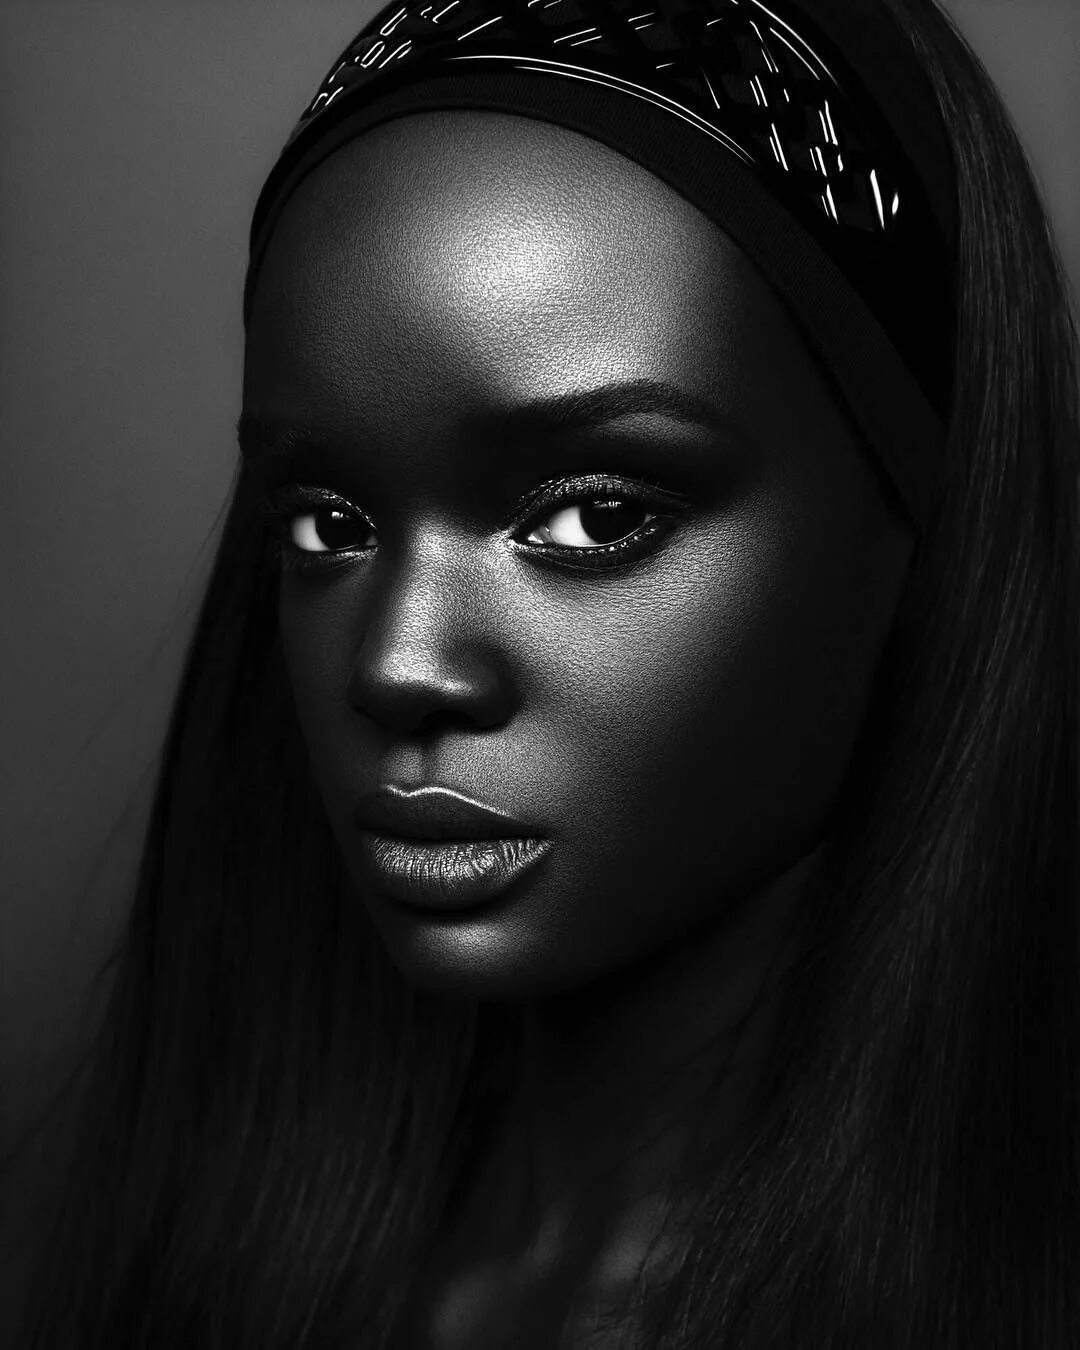 Чернокожая дама. Модель даки тот (Duckie thot) из Южного Судана. Брук Бейли темнокожая модель. Пегги Даниэль темнокожая модель.